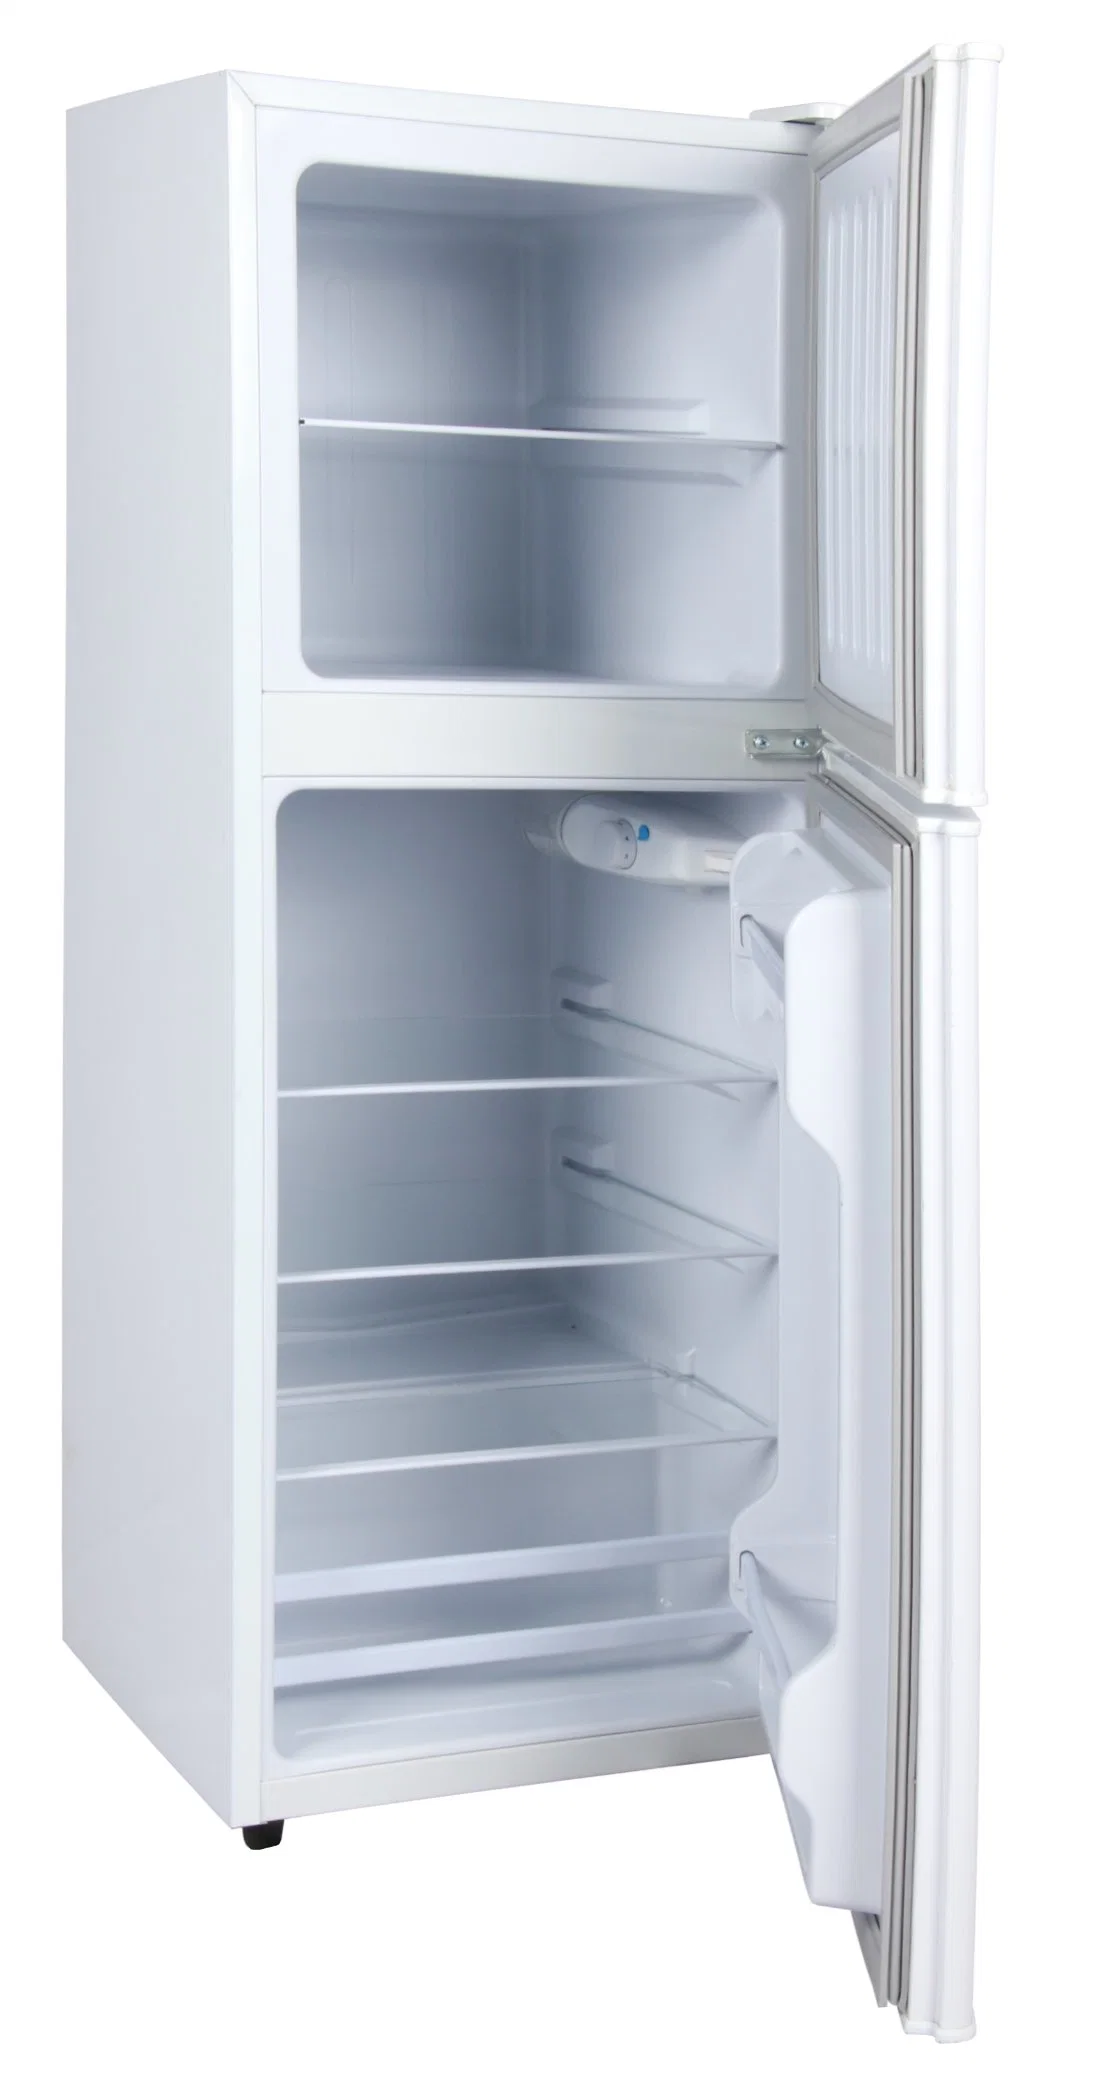 112L Double Door Refrigerators Top Freeze Fridge Hot Sale Home Appliance Other Refrigerators